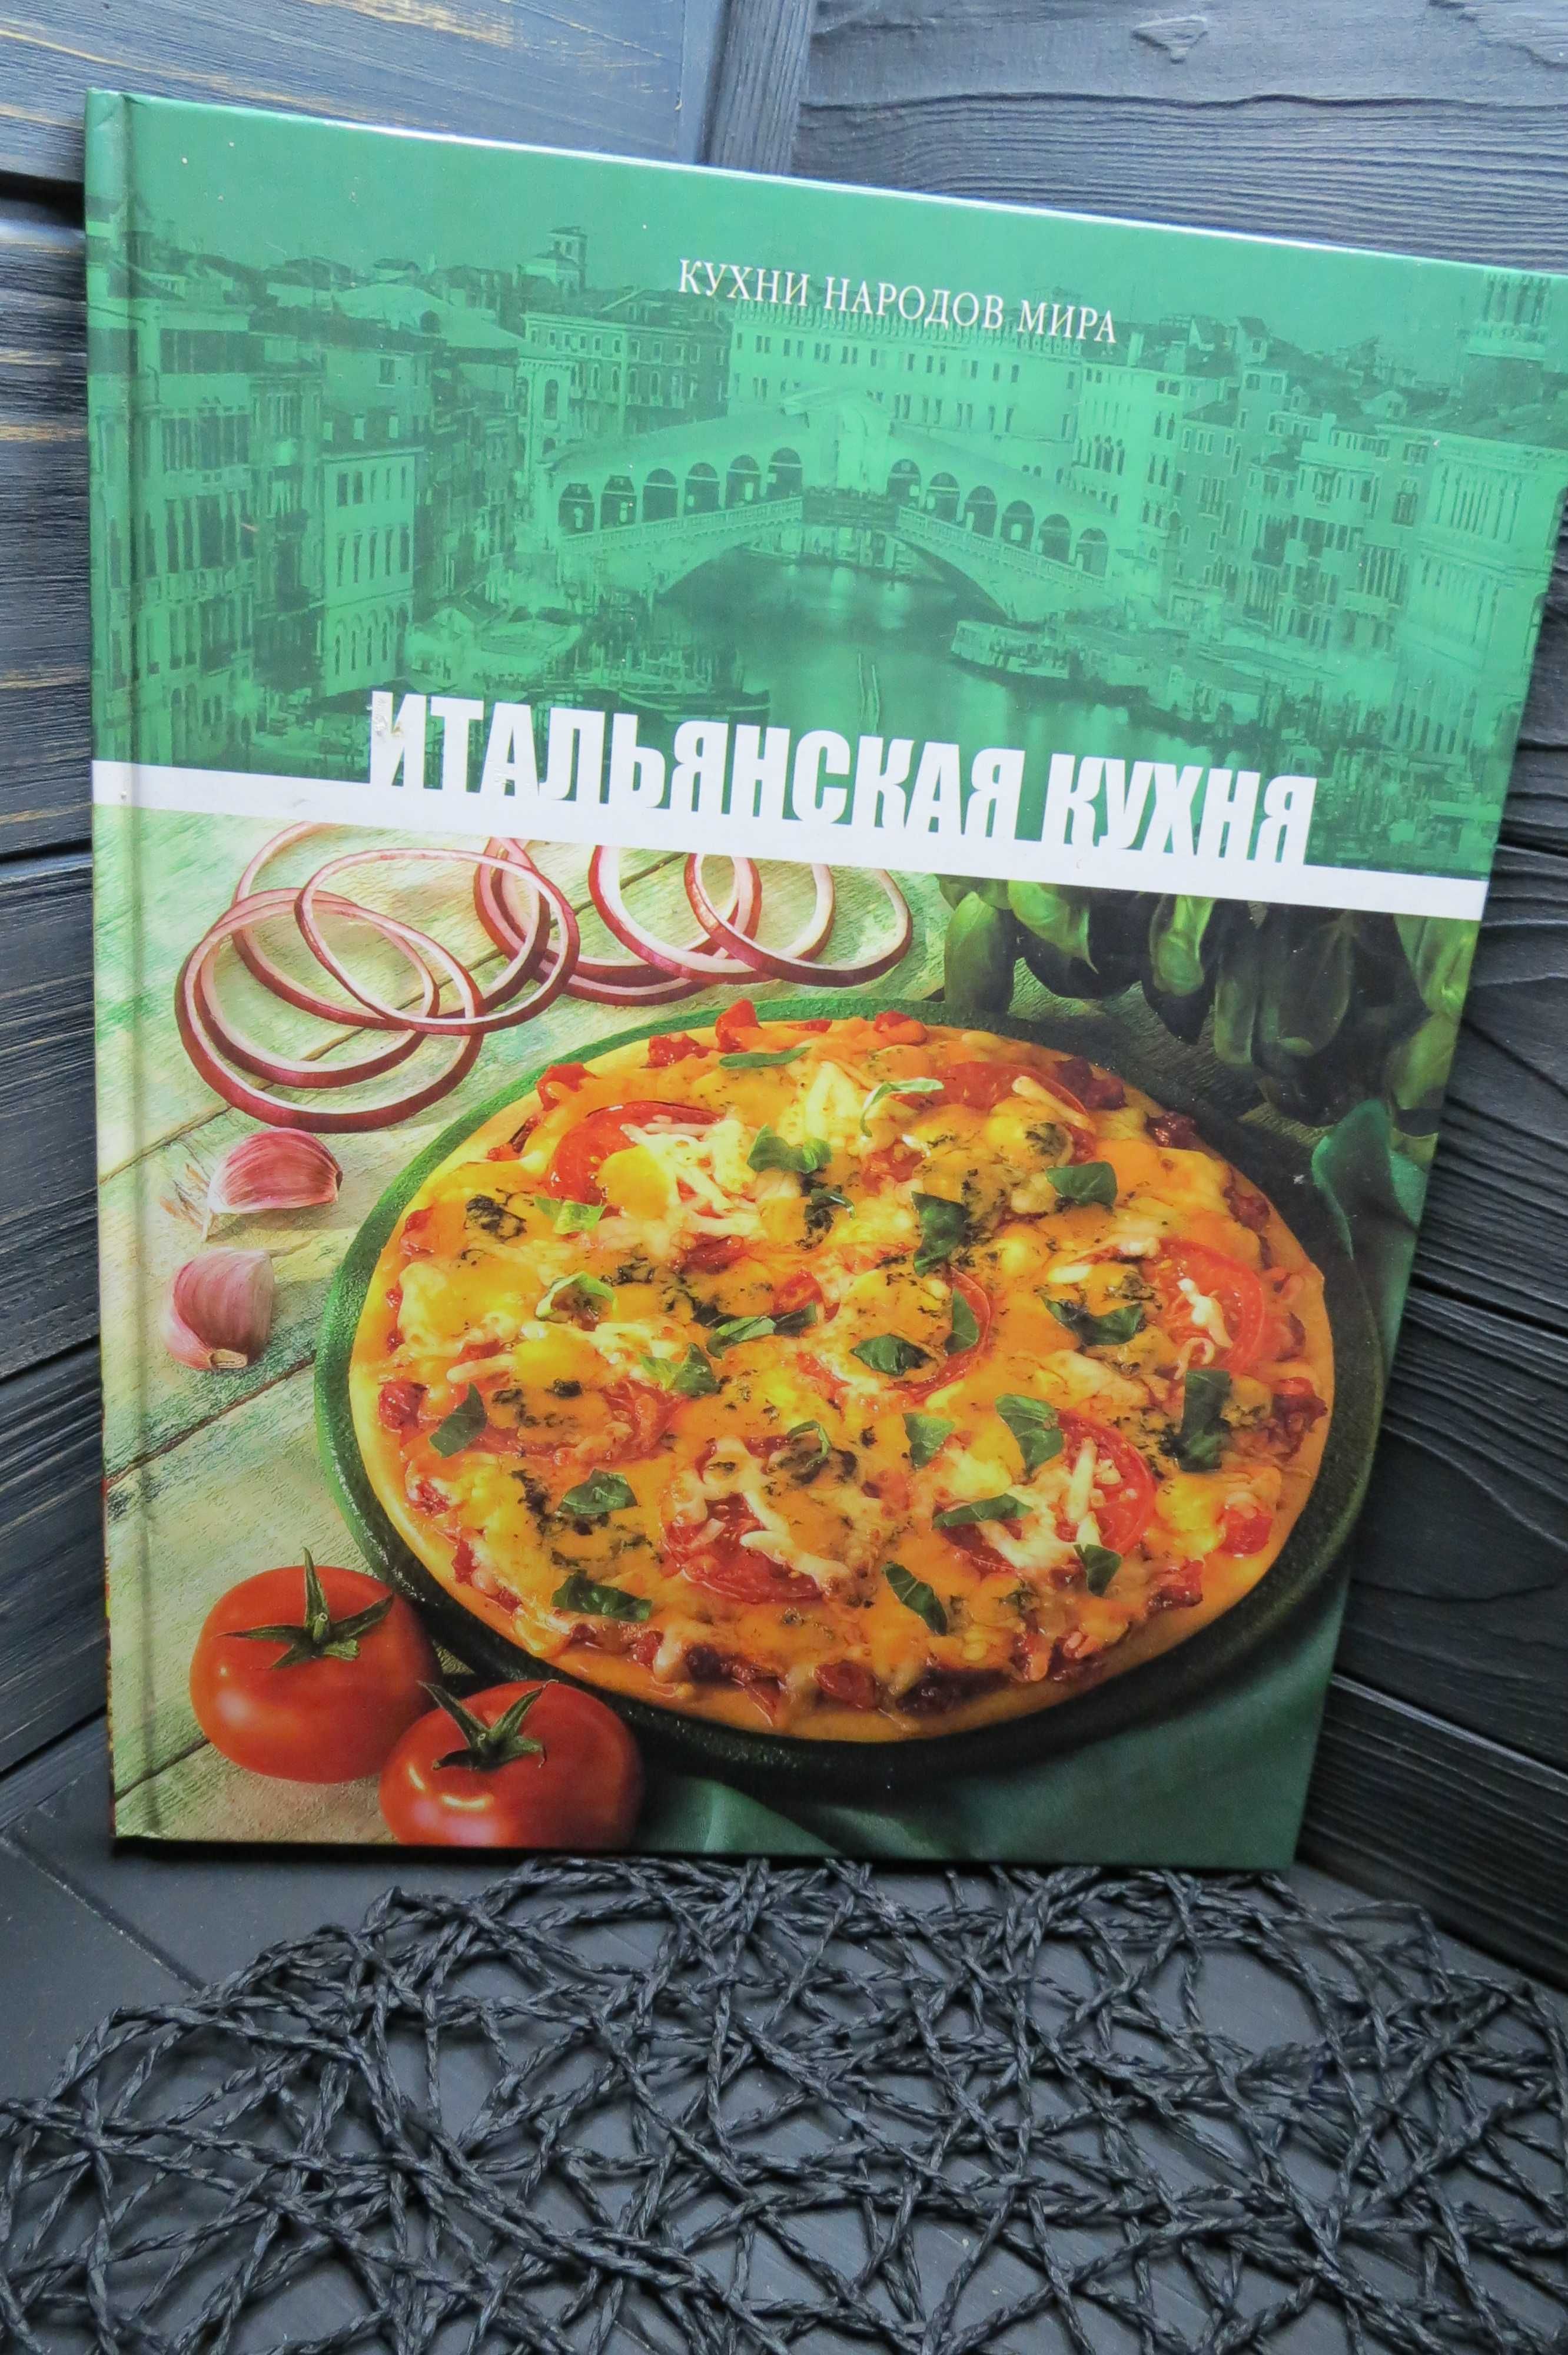 Книга Итальянская русская кухня Серия Кухни народов мира 2 шт